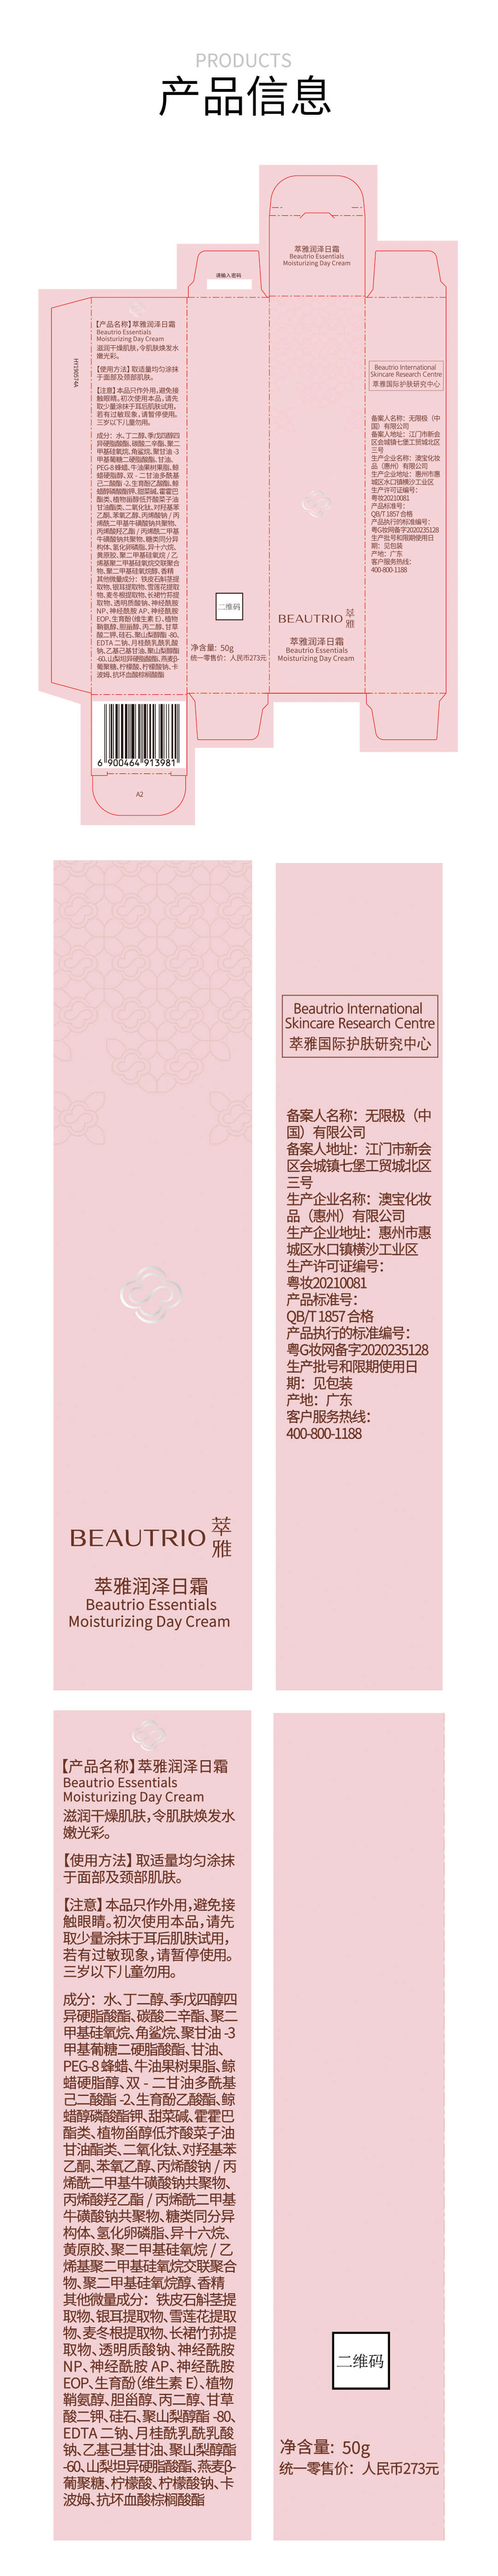 萃雅润泽日霜(2020版)18130-05-详情页_14.jpg